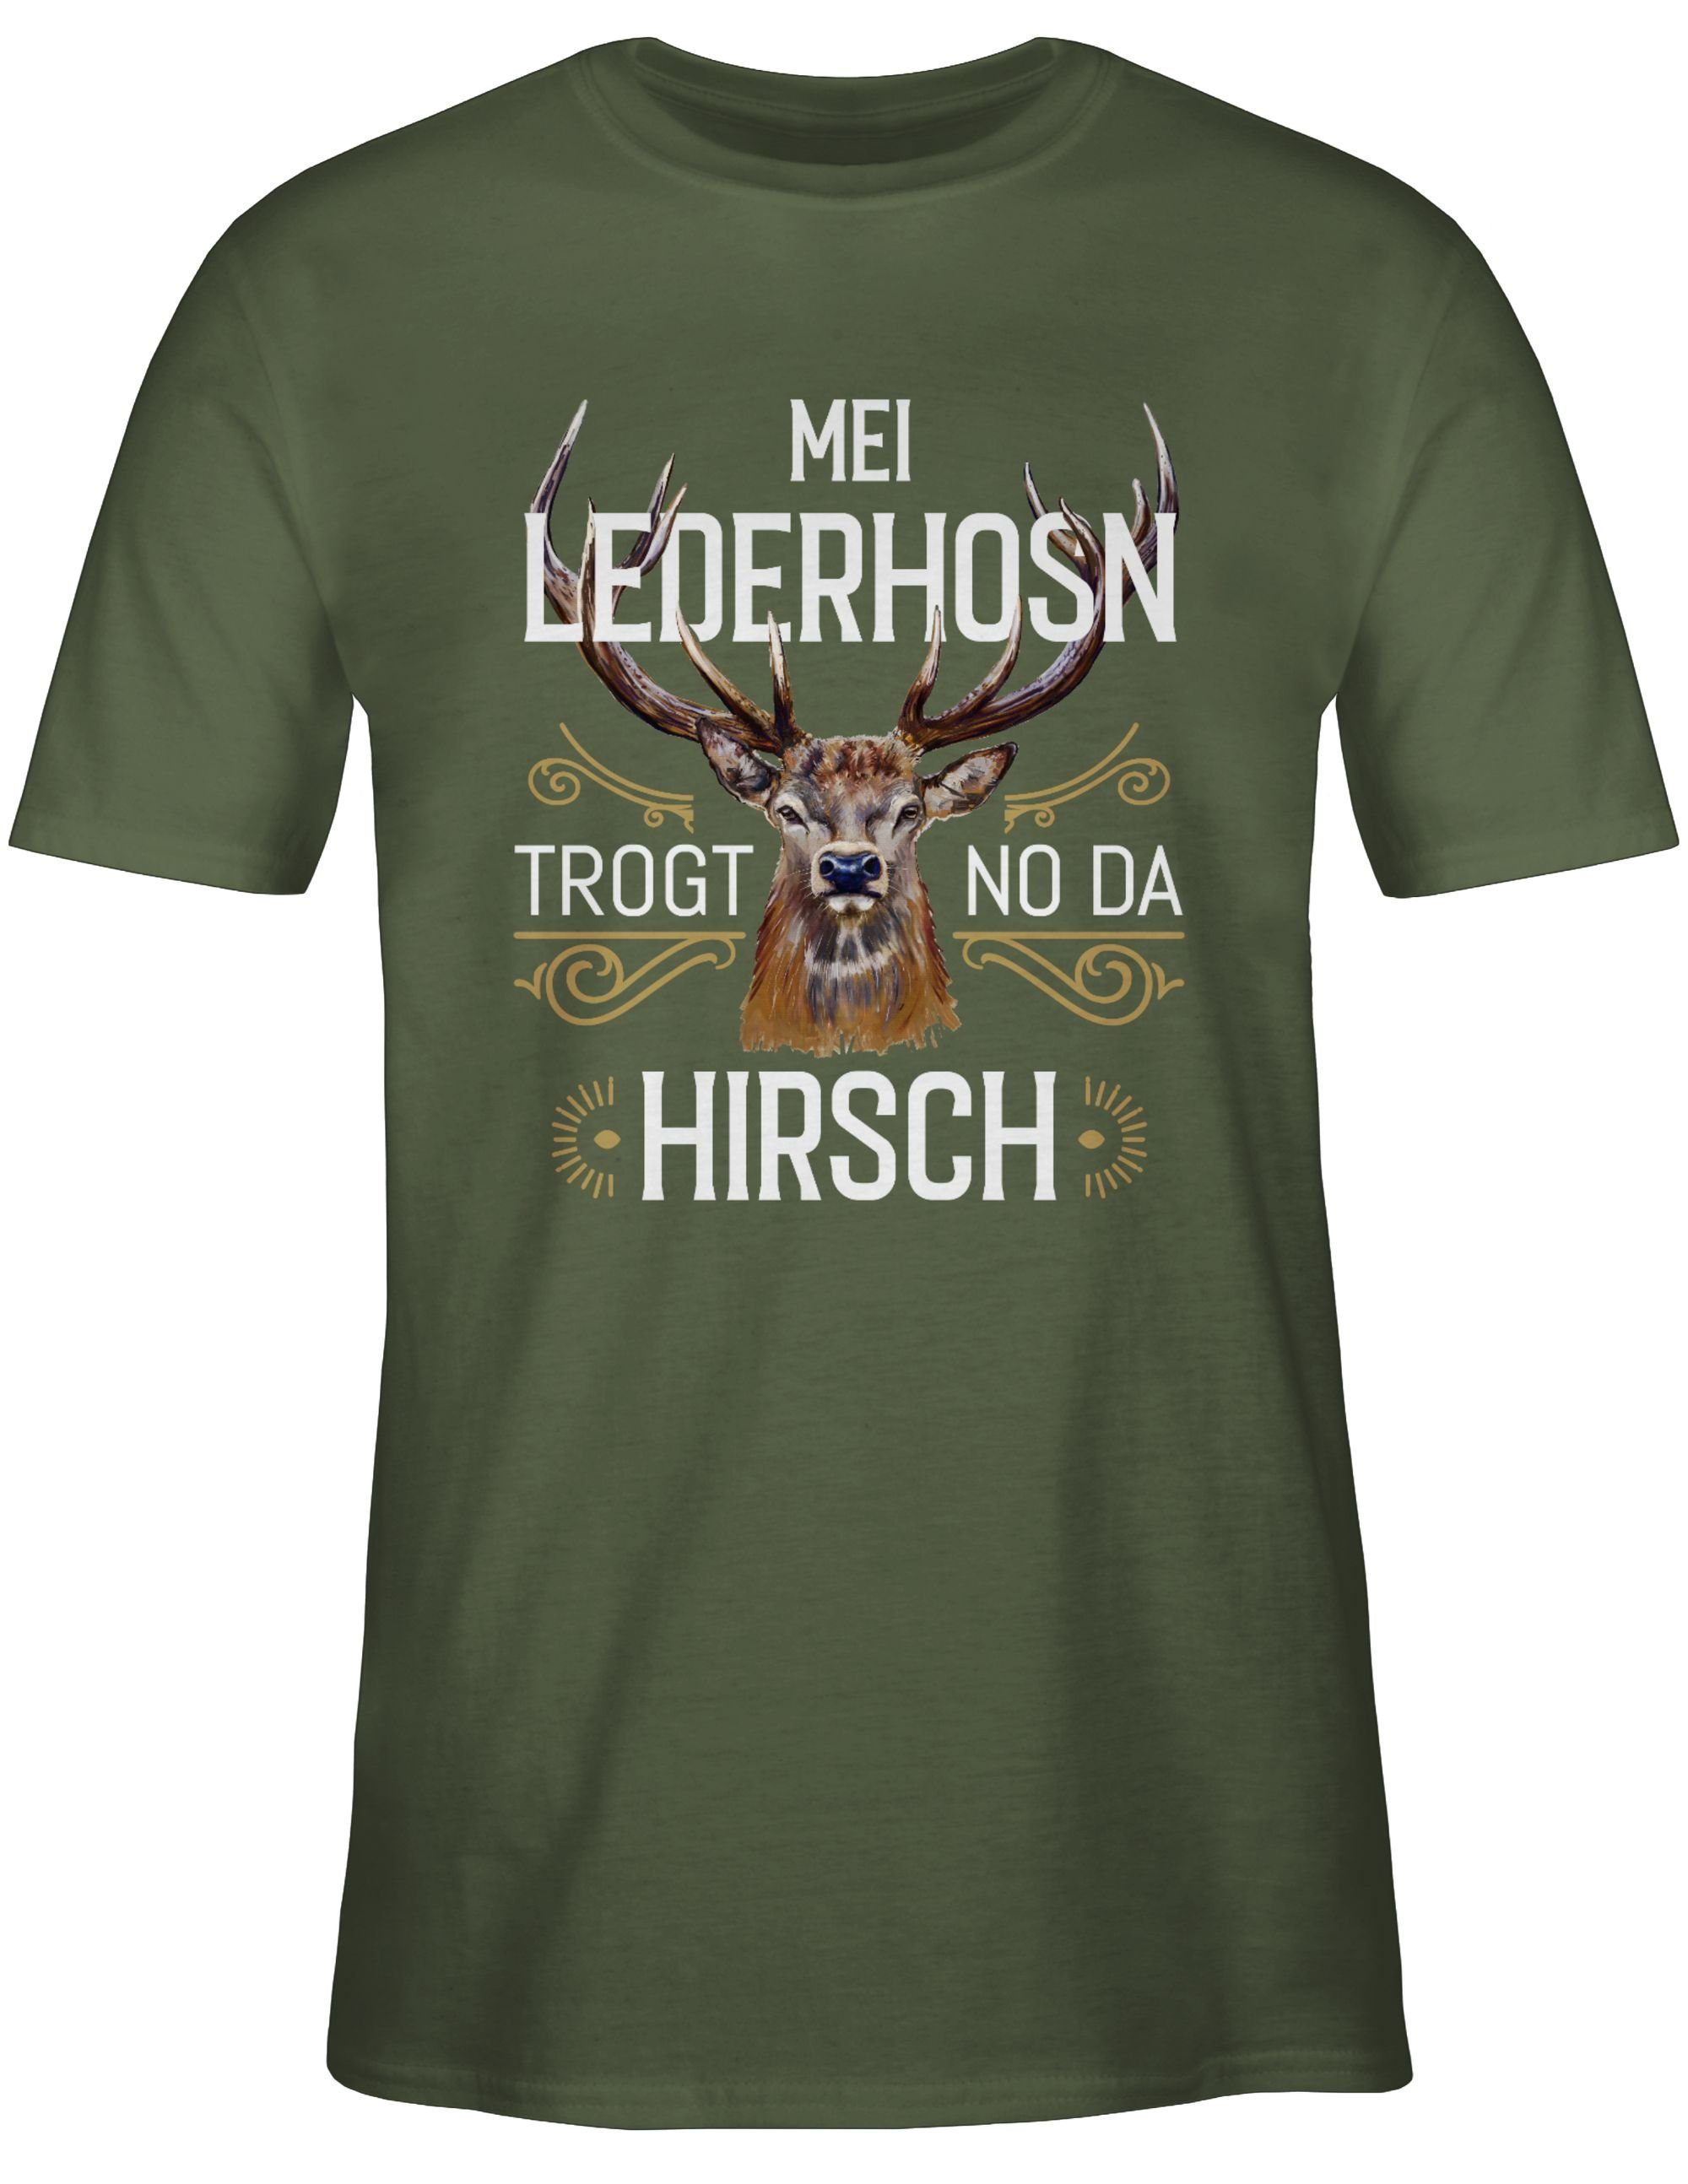 Oktoberfest 02 no T-Shirt weiß Grün - Lederhosn Mei da braun Shirtracer Army Mode für trogt Hirsch Herren